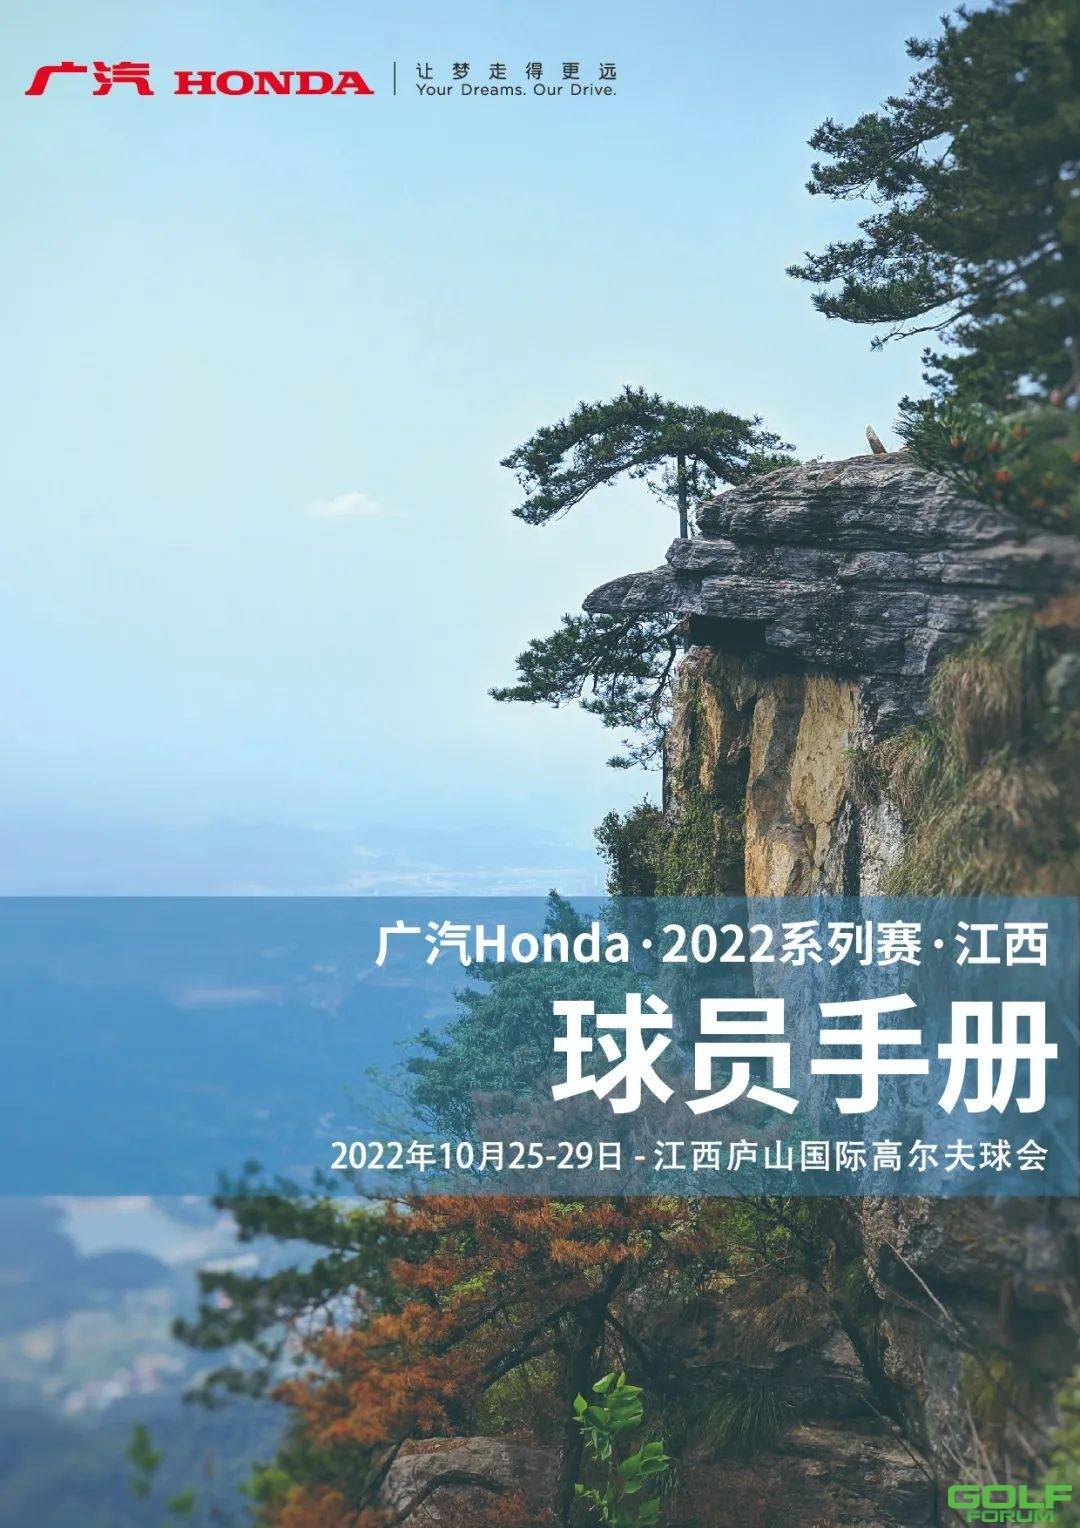 “广汽Honda·2022系列赛·江西站”将在庐山国际高尔夫球会盛大开幕 ...